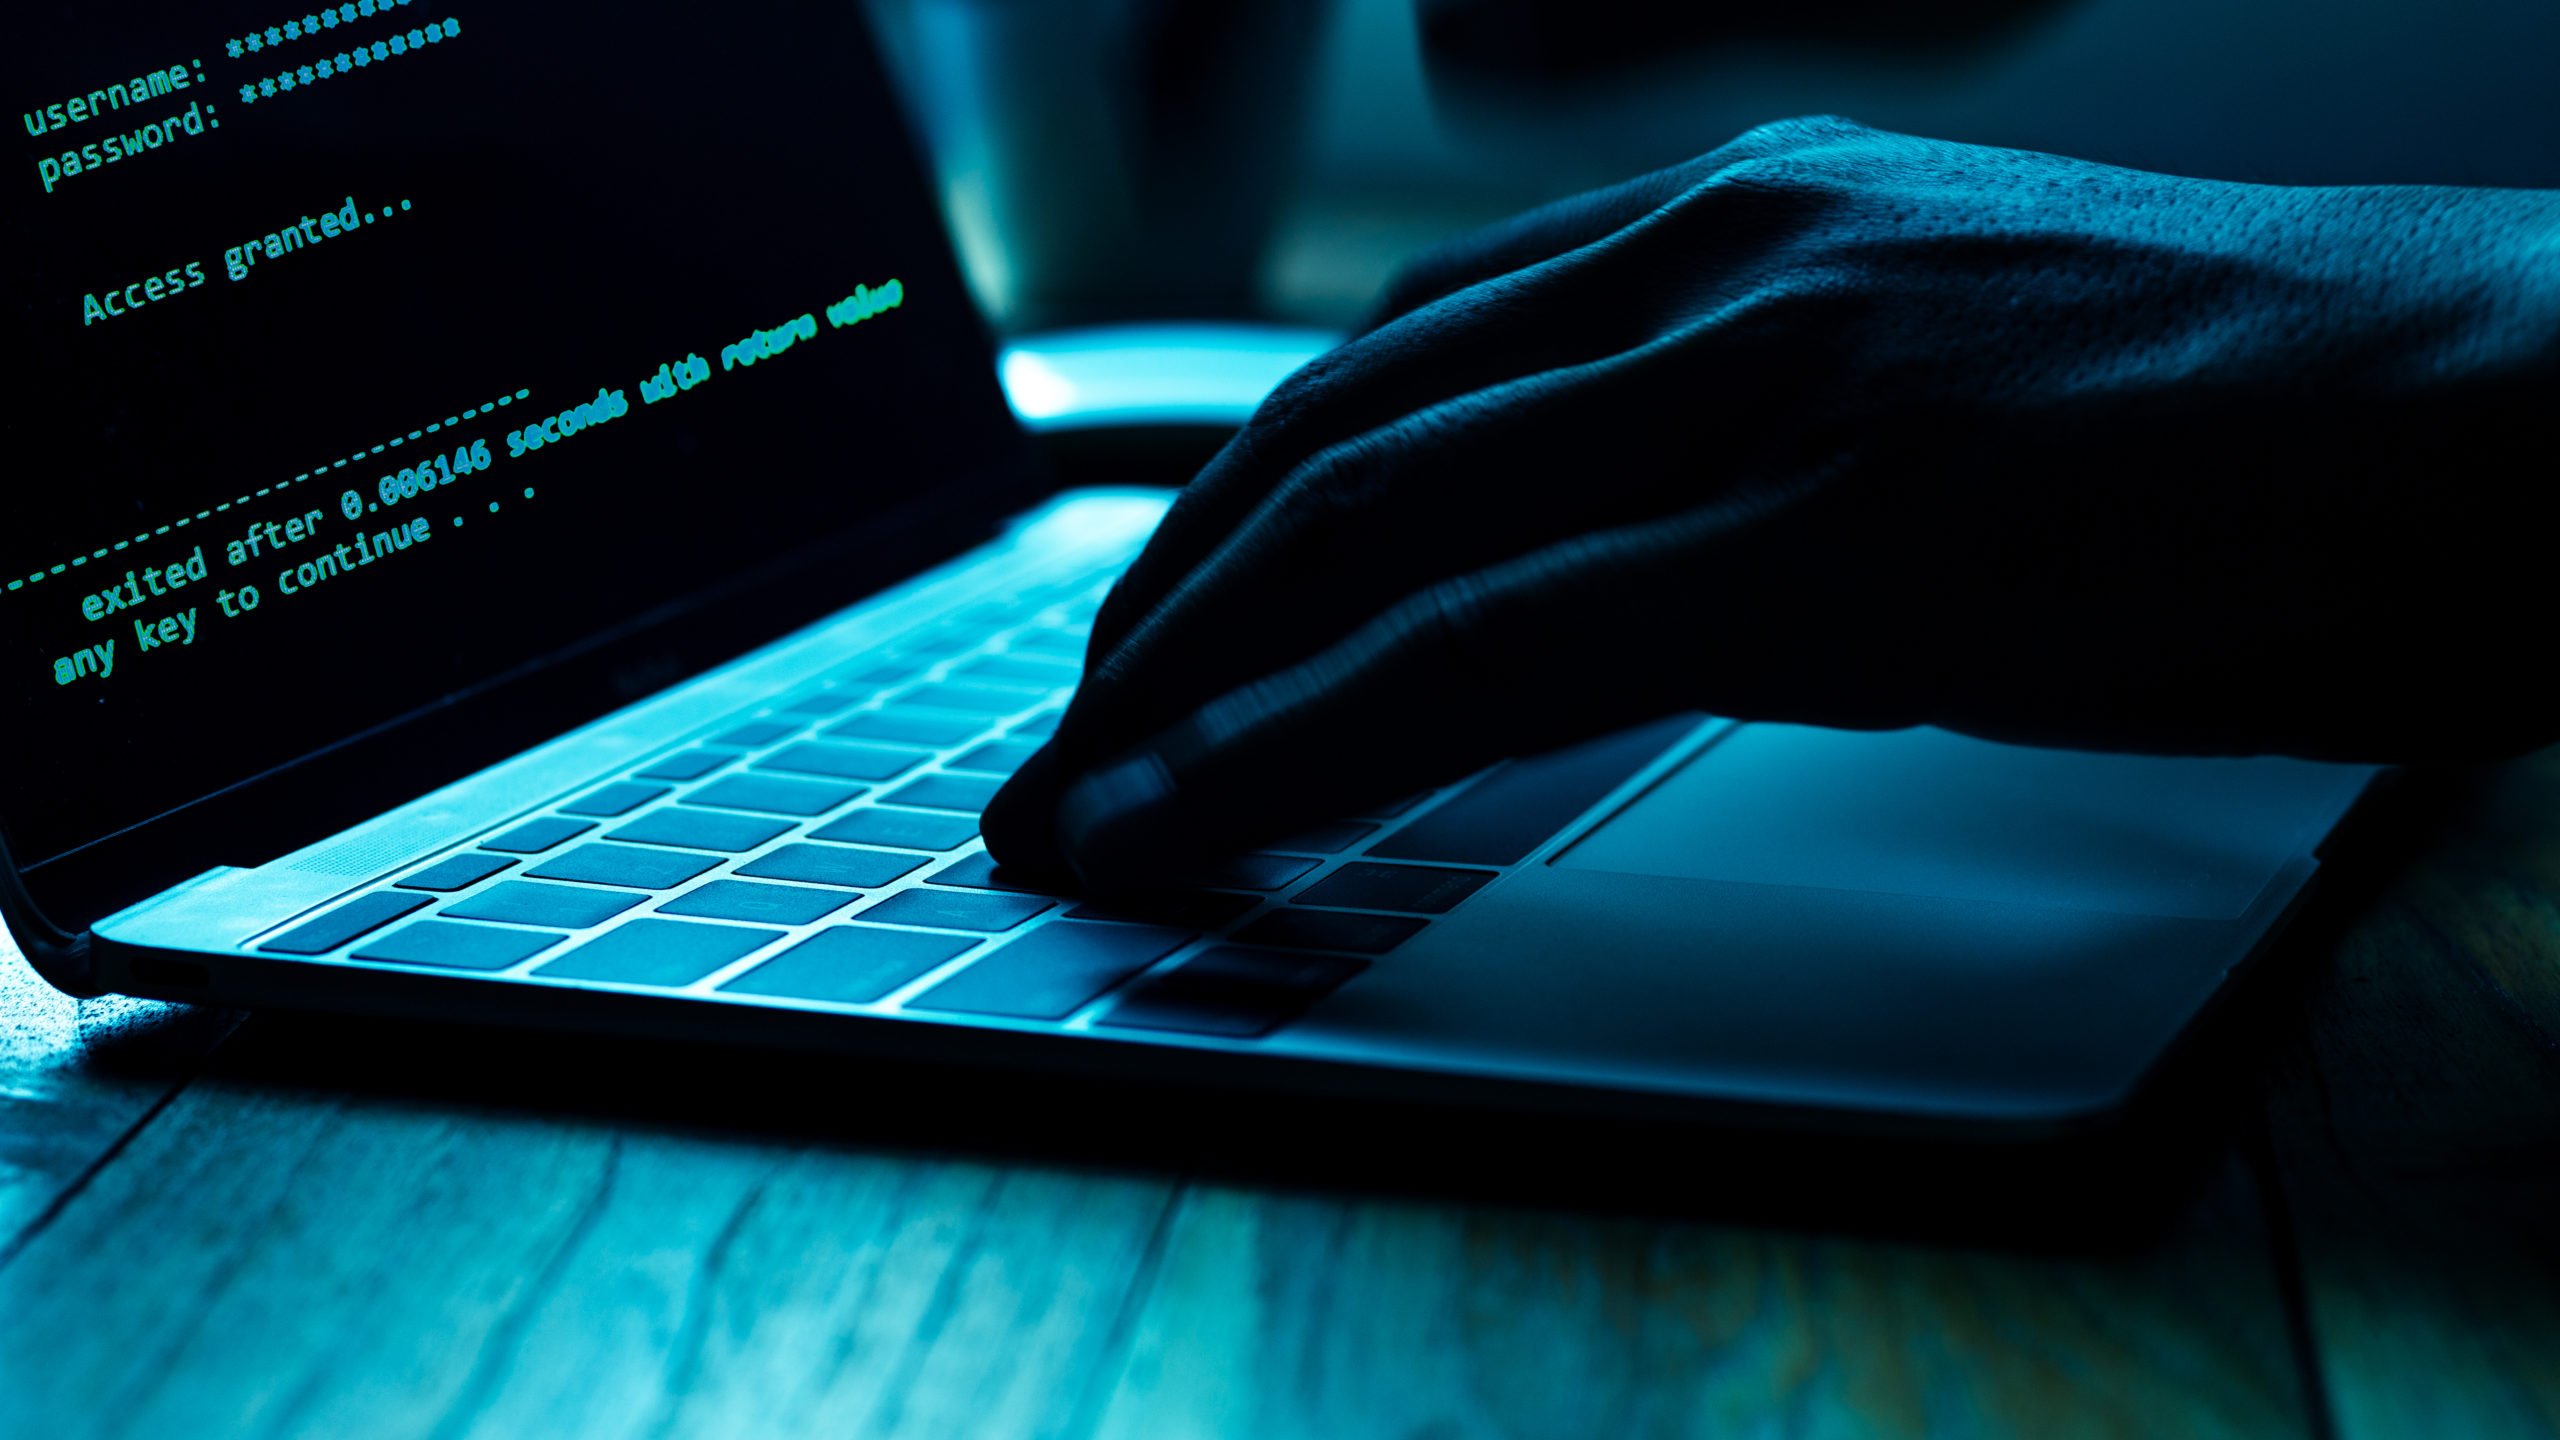 El cibercrimen está un paso adelante de las empresas. Estas acciones permiten prevenir su impacto